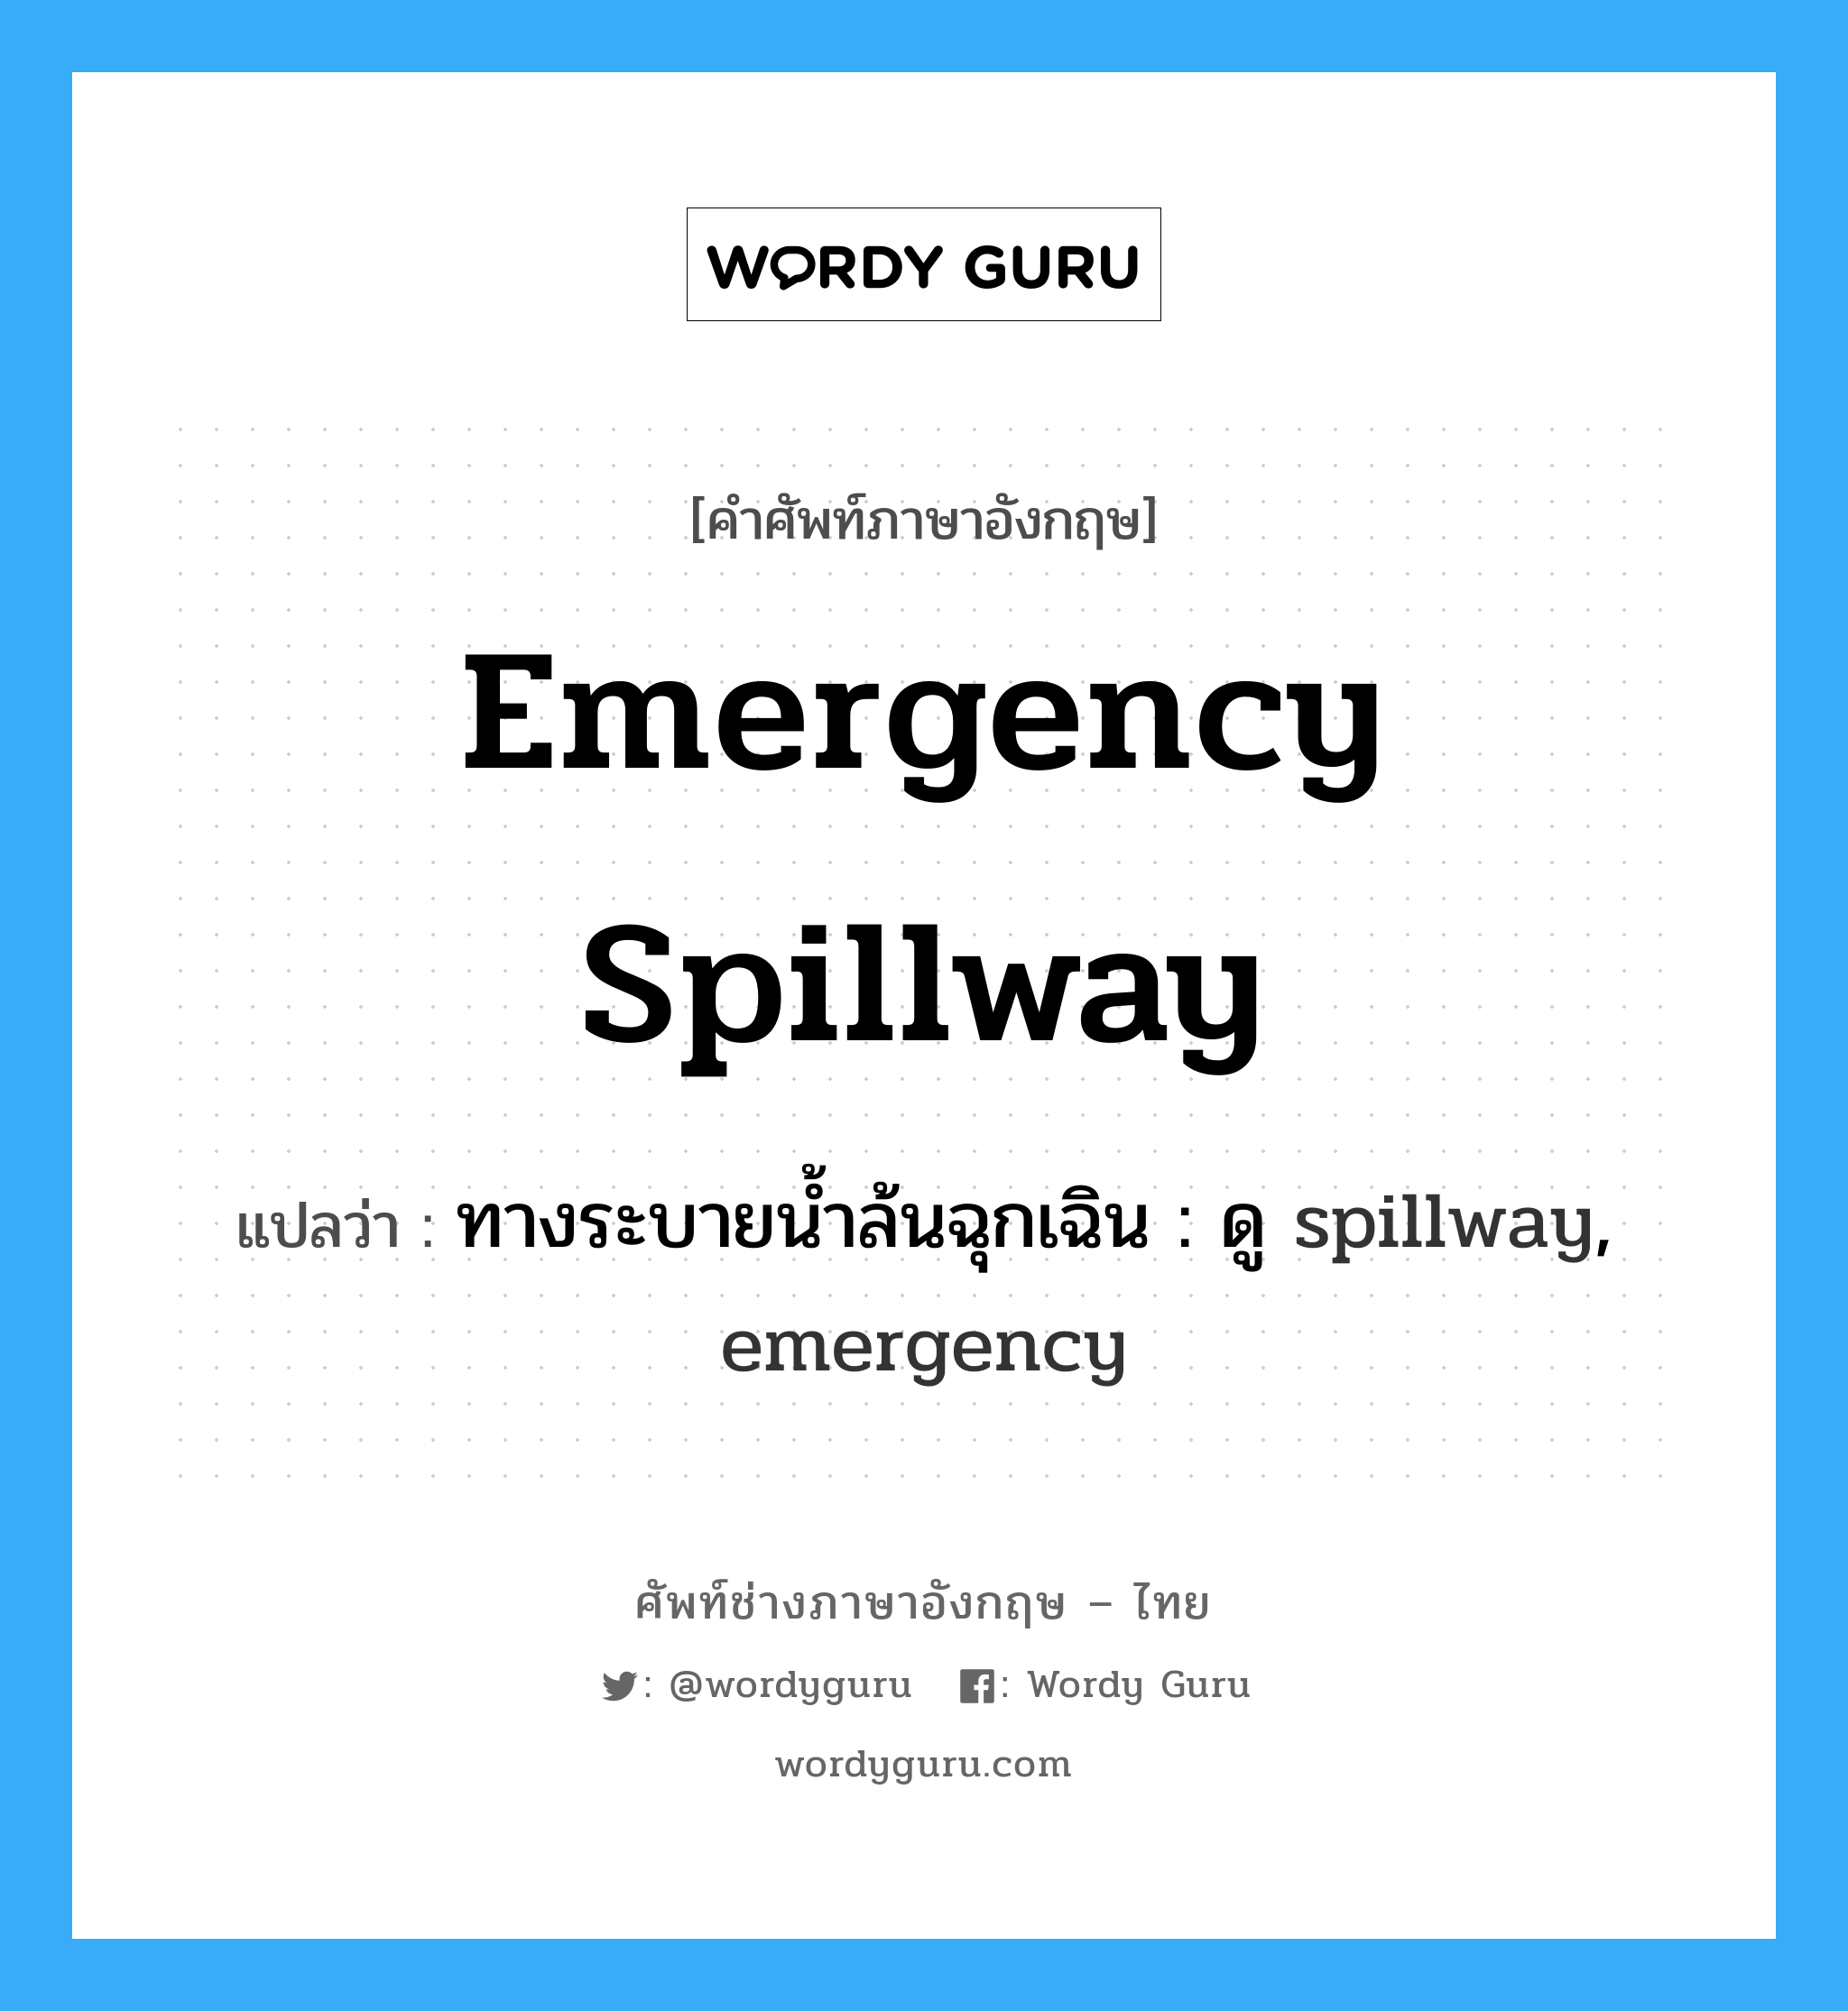 ทางระบายน้ำล้นฉุกเฉิน : ดู spillway, emergency ภาษาอังกฤษ?, คำศัพท์ช่างภาษาอังกฤษ - ไทย ทางระบายน้ำล้นฉุกเฉิน : ดู spillway, emergency คำศัพท์ภาษาอังกฤษ ทางระบายน้ำล้นฉุกเฉิน : ดู spillway, emergency แปลว่า emergency spillway